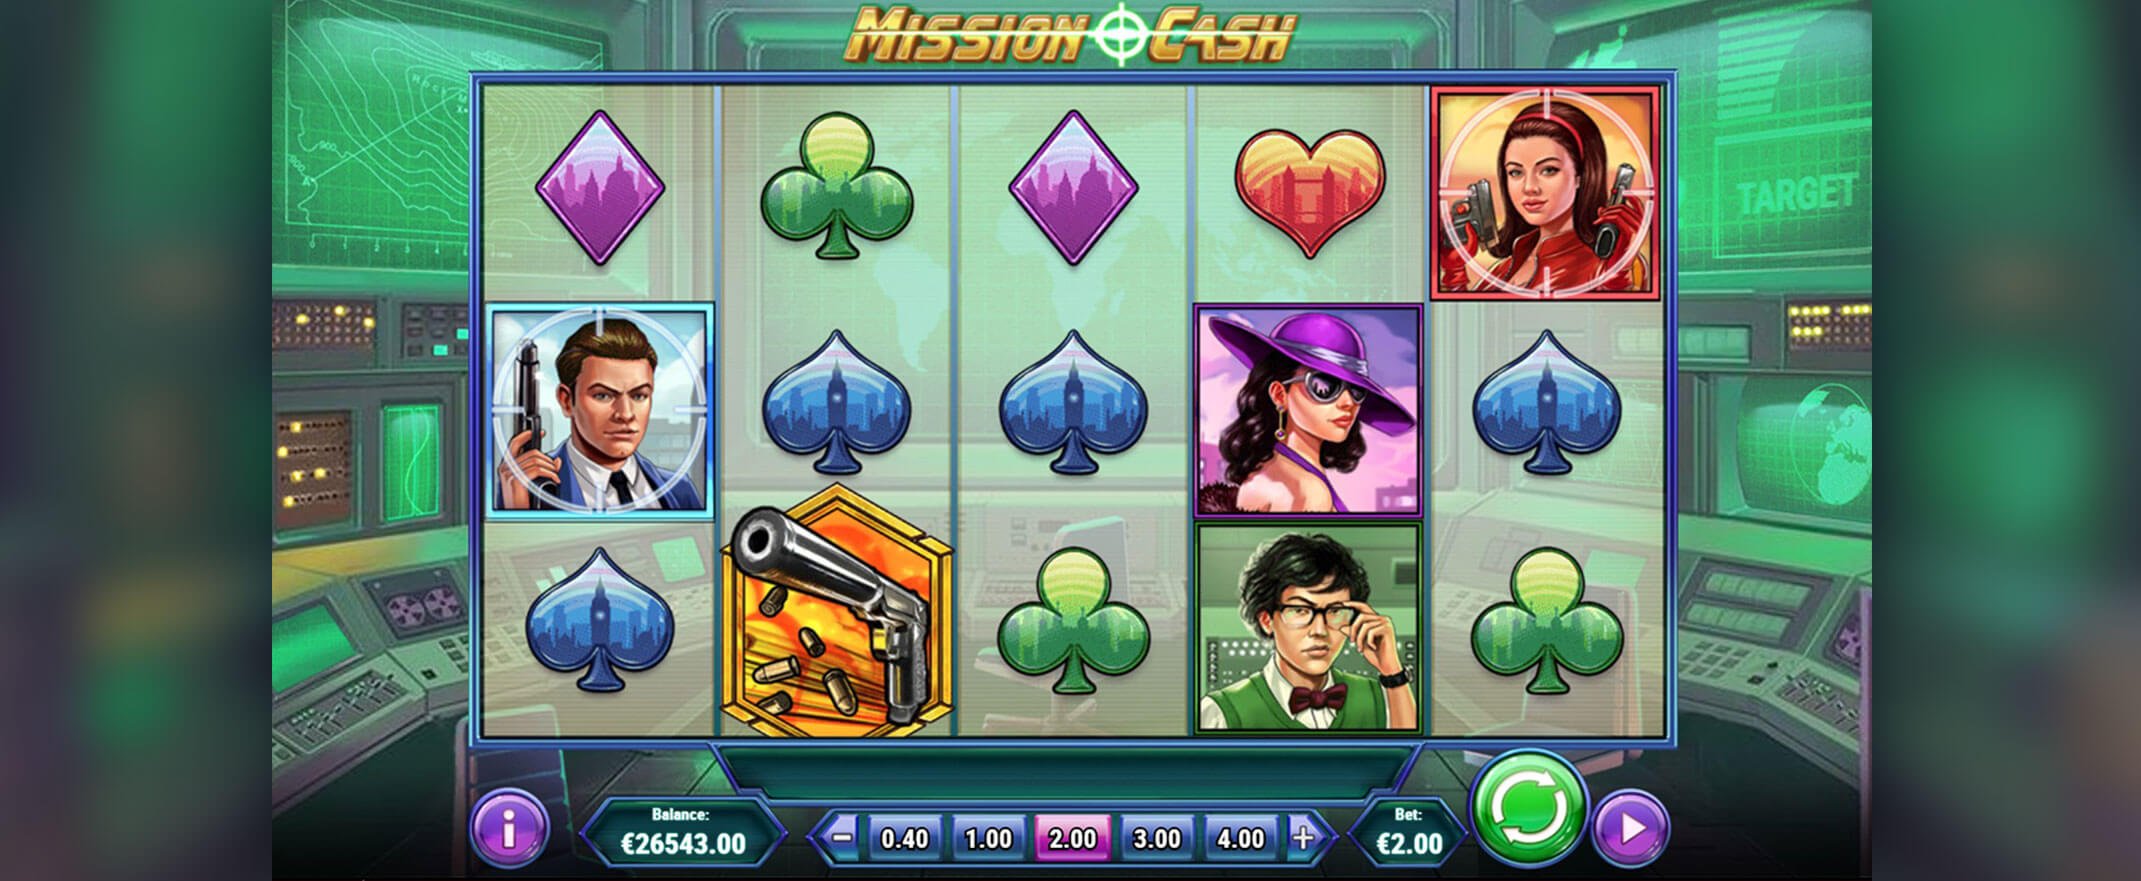 Mission Cash Spielautomat